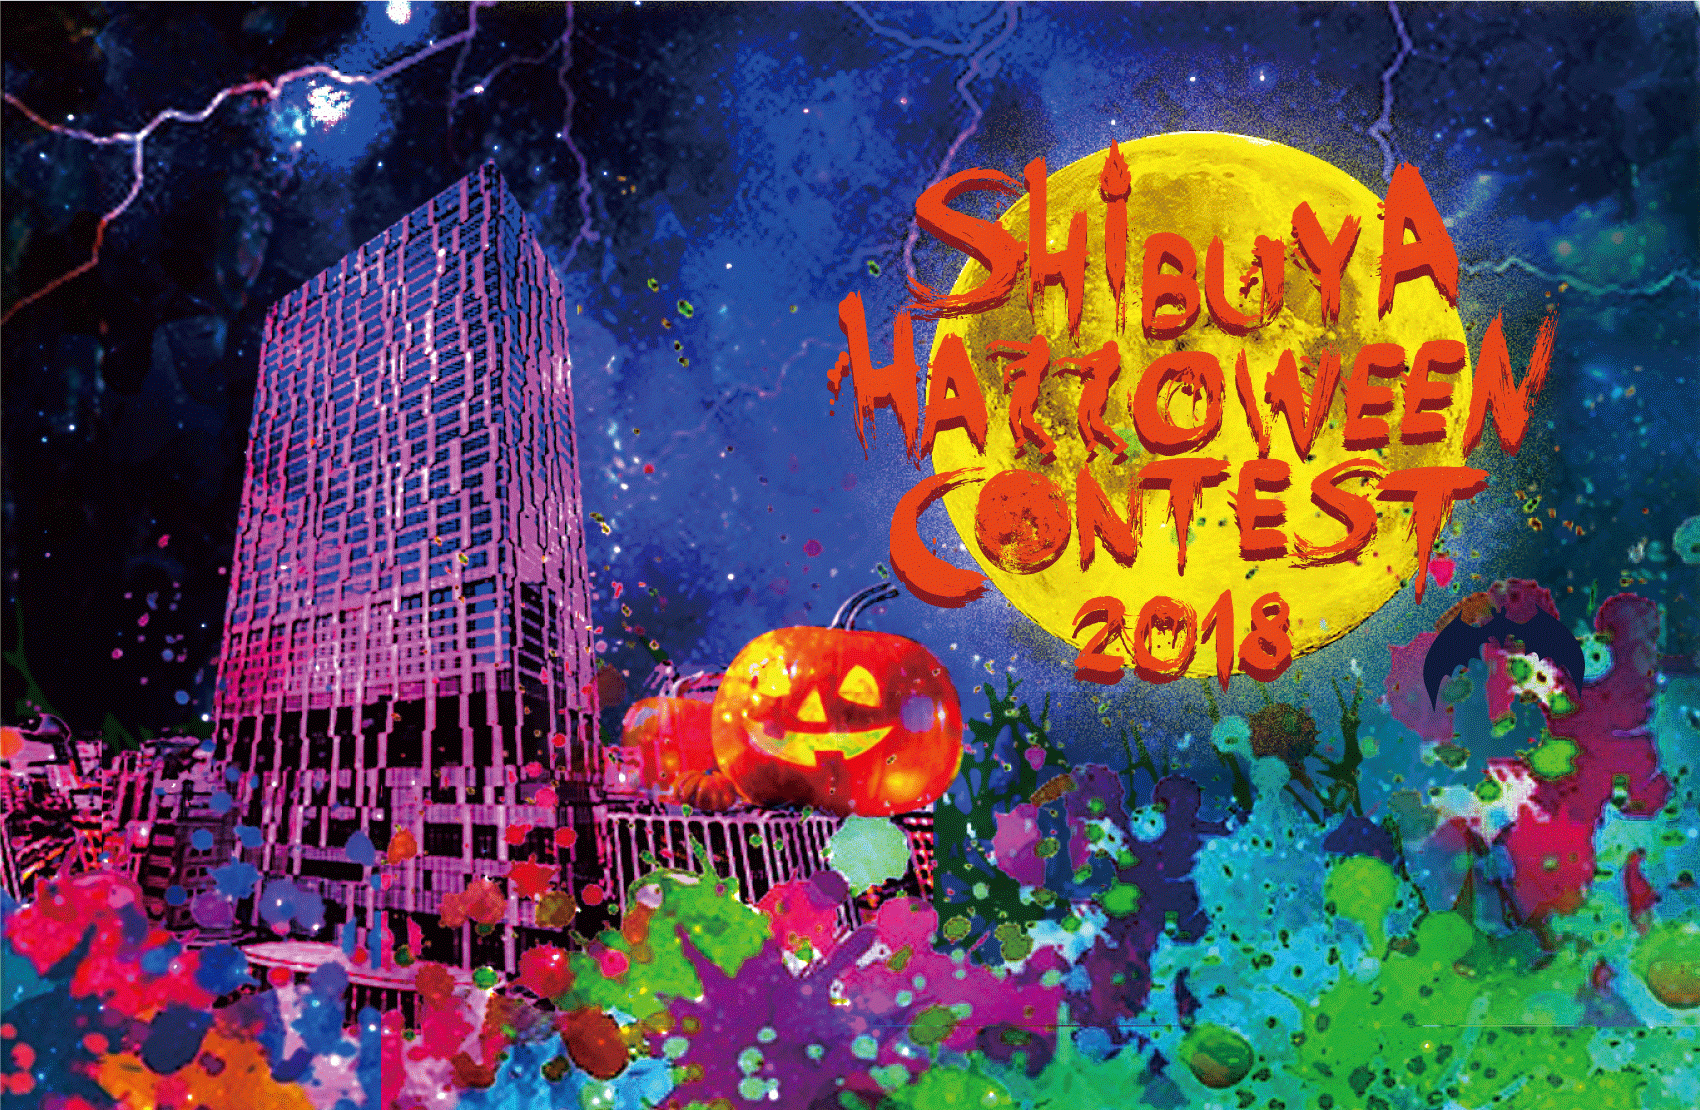 10月13日、渋谷ストリームで仮装コンテスト「Shibuya Halloween Contest 2018」を開催。DJ KOOが渋谷のハロウィンを盛り上げる！  企業リリース | 日刊工業新聞 電子版